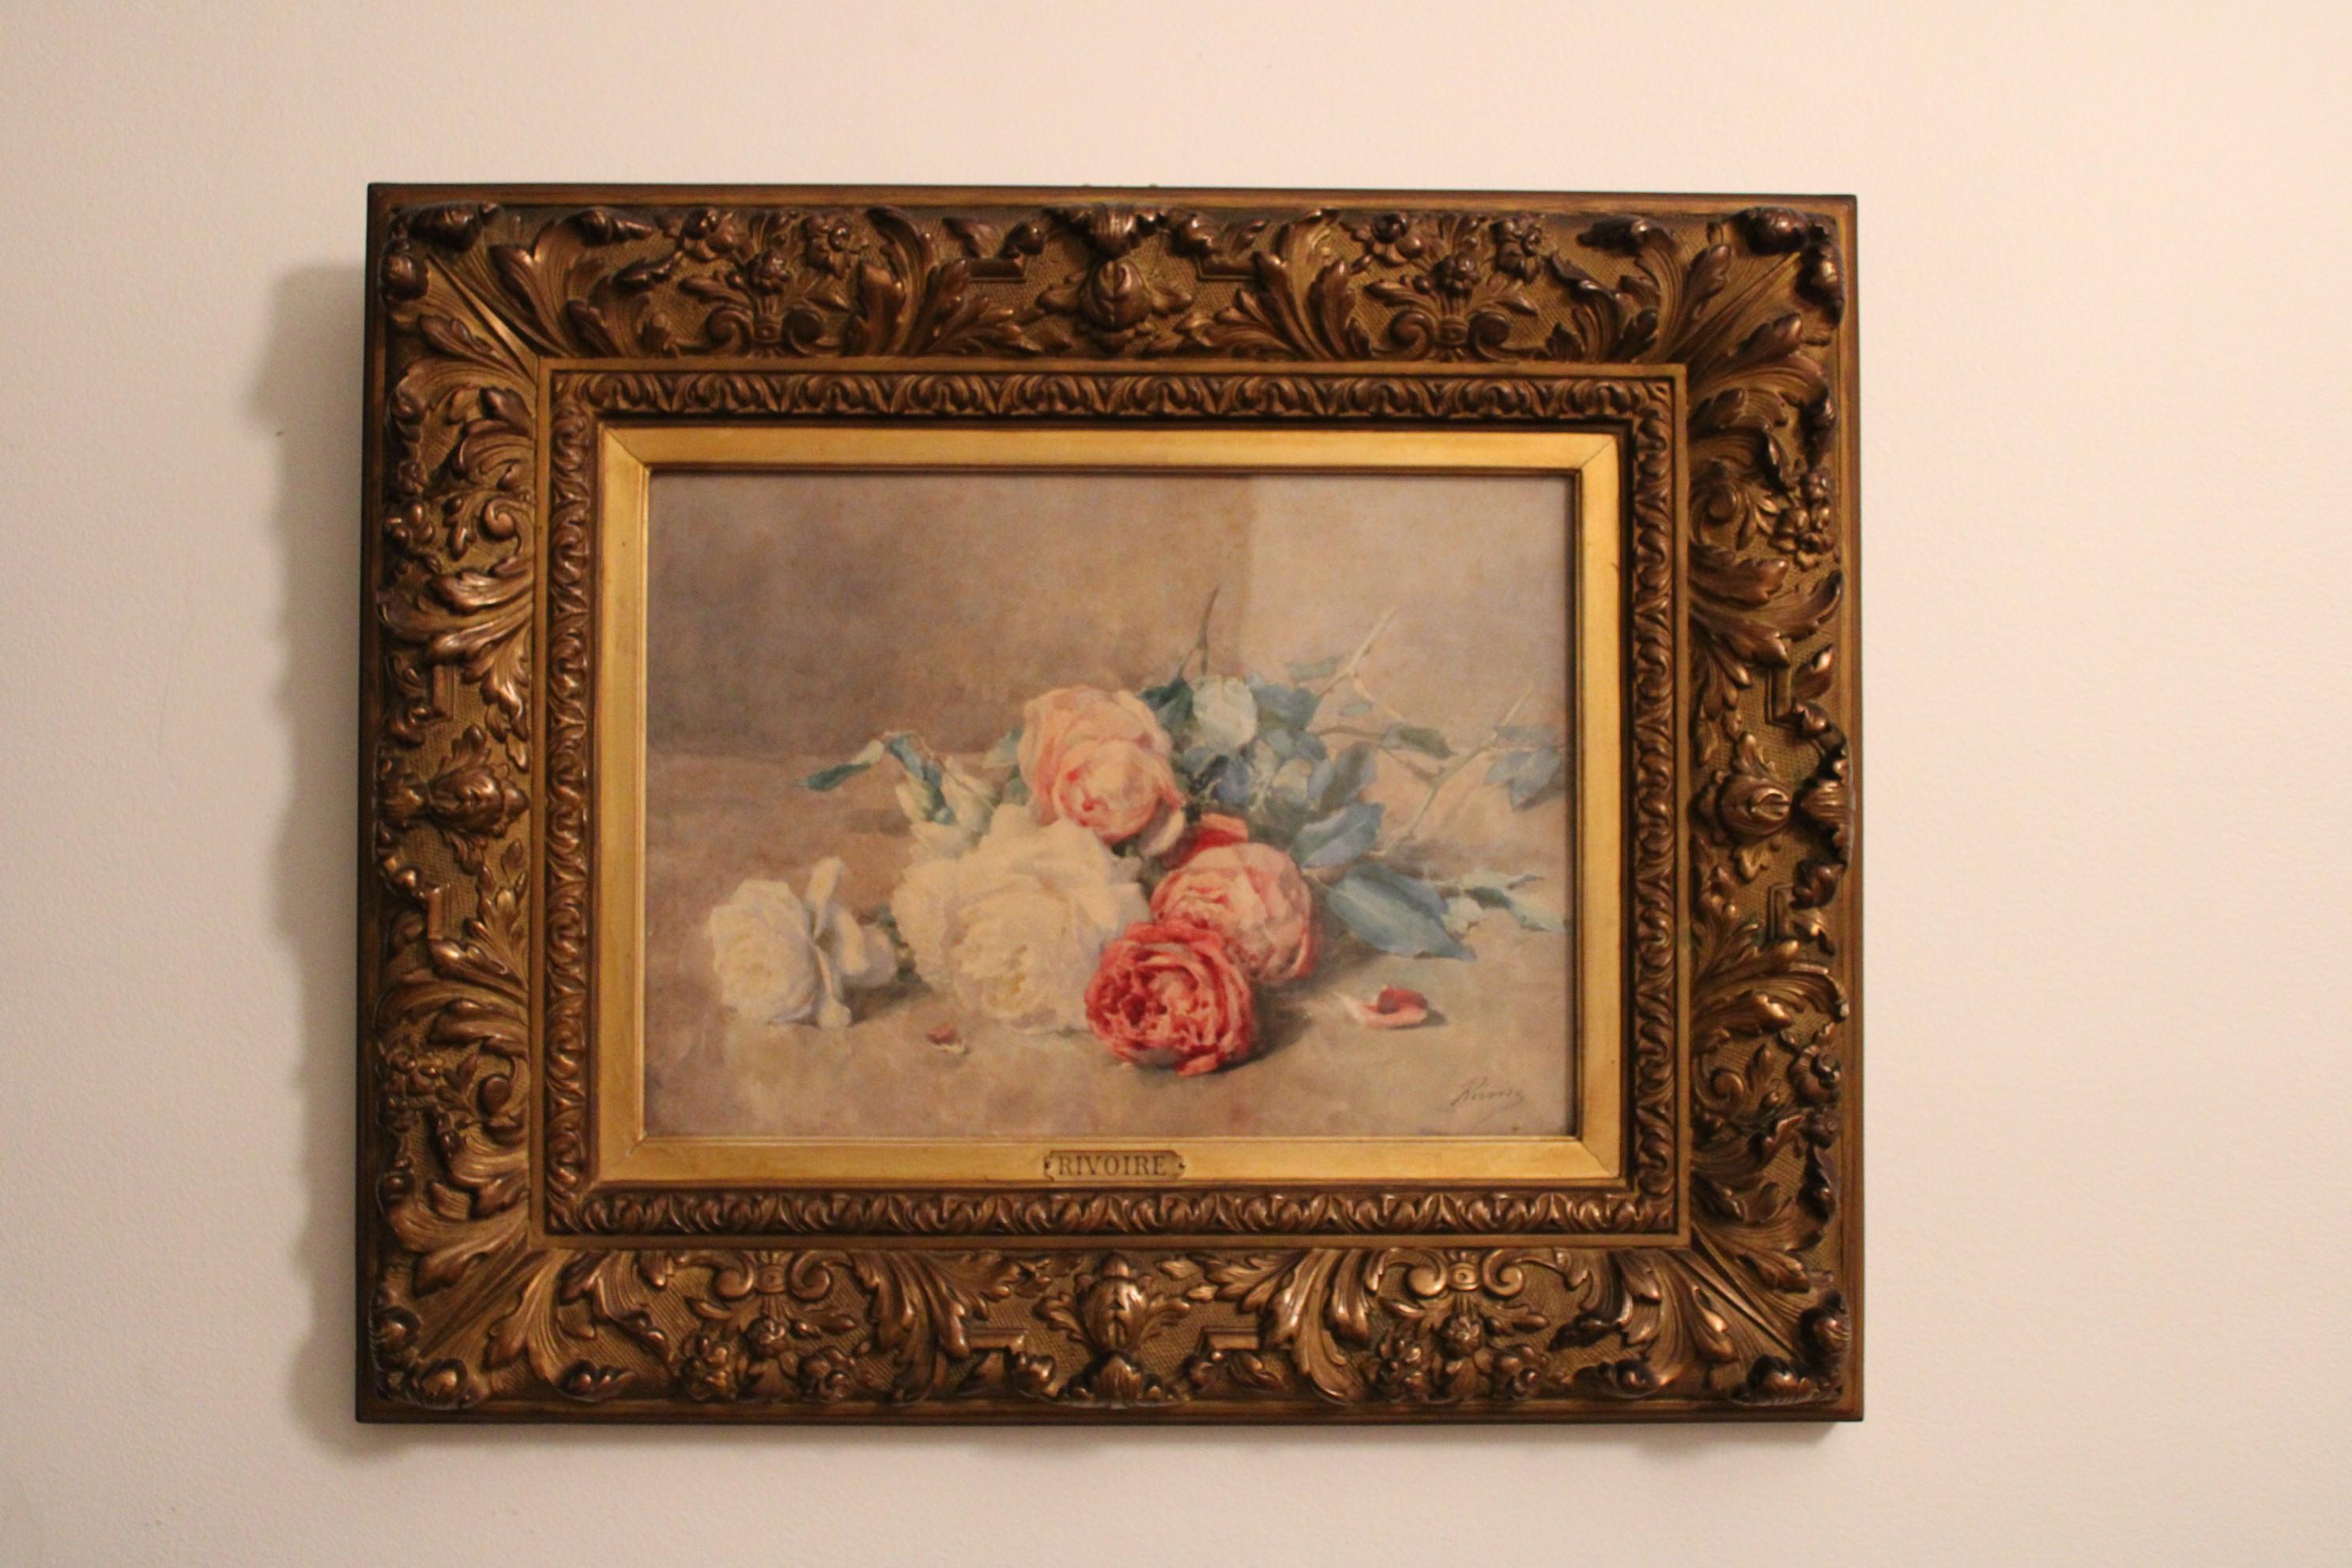 Aquarell auf Papier von François Rivoire (1842-1919)
Blumenstrauß
Signiert unten rechts.

Flecken auf dem Papier (siehe Fotos, oben rechts)

Abmessungen des Rahmens: 62 x 51 x 5 cm
Maße des Gemäldes: 42 x 30 cm.